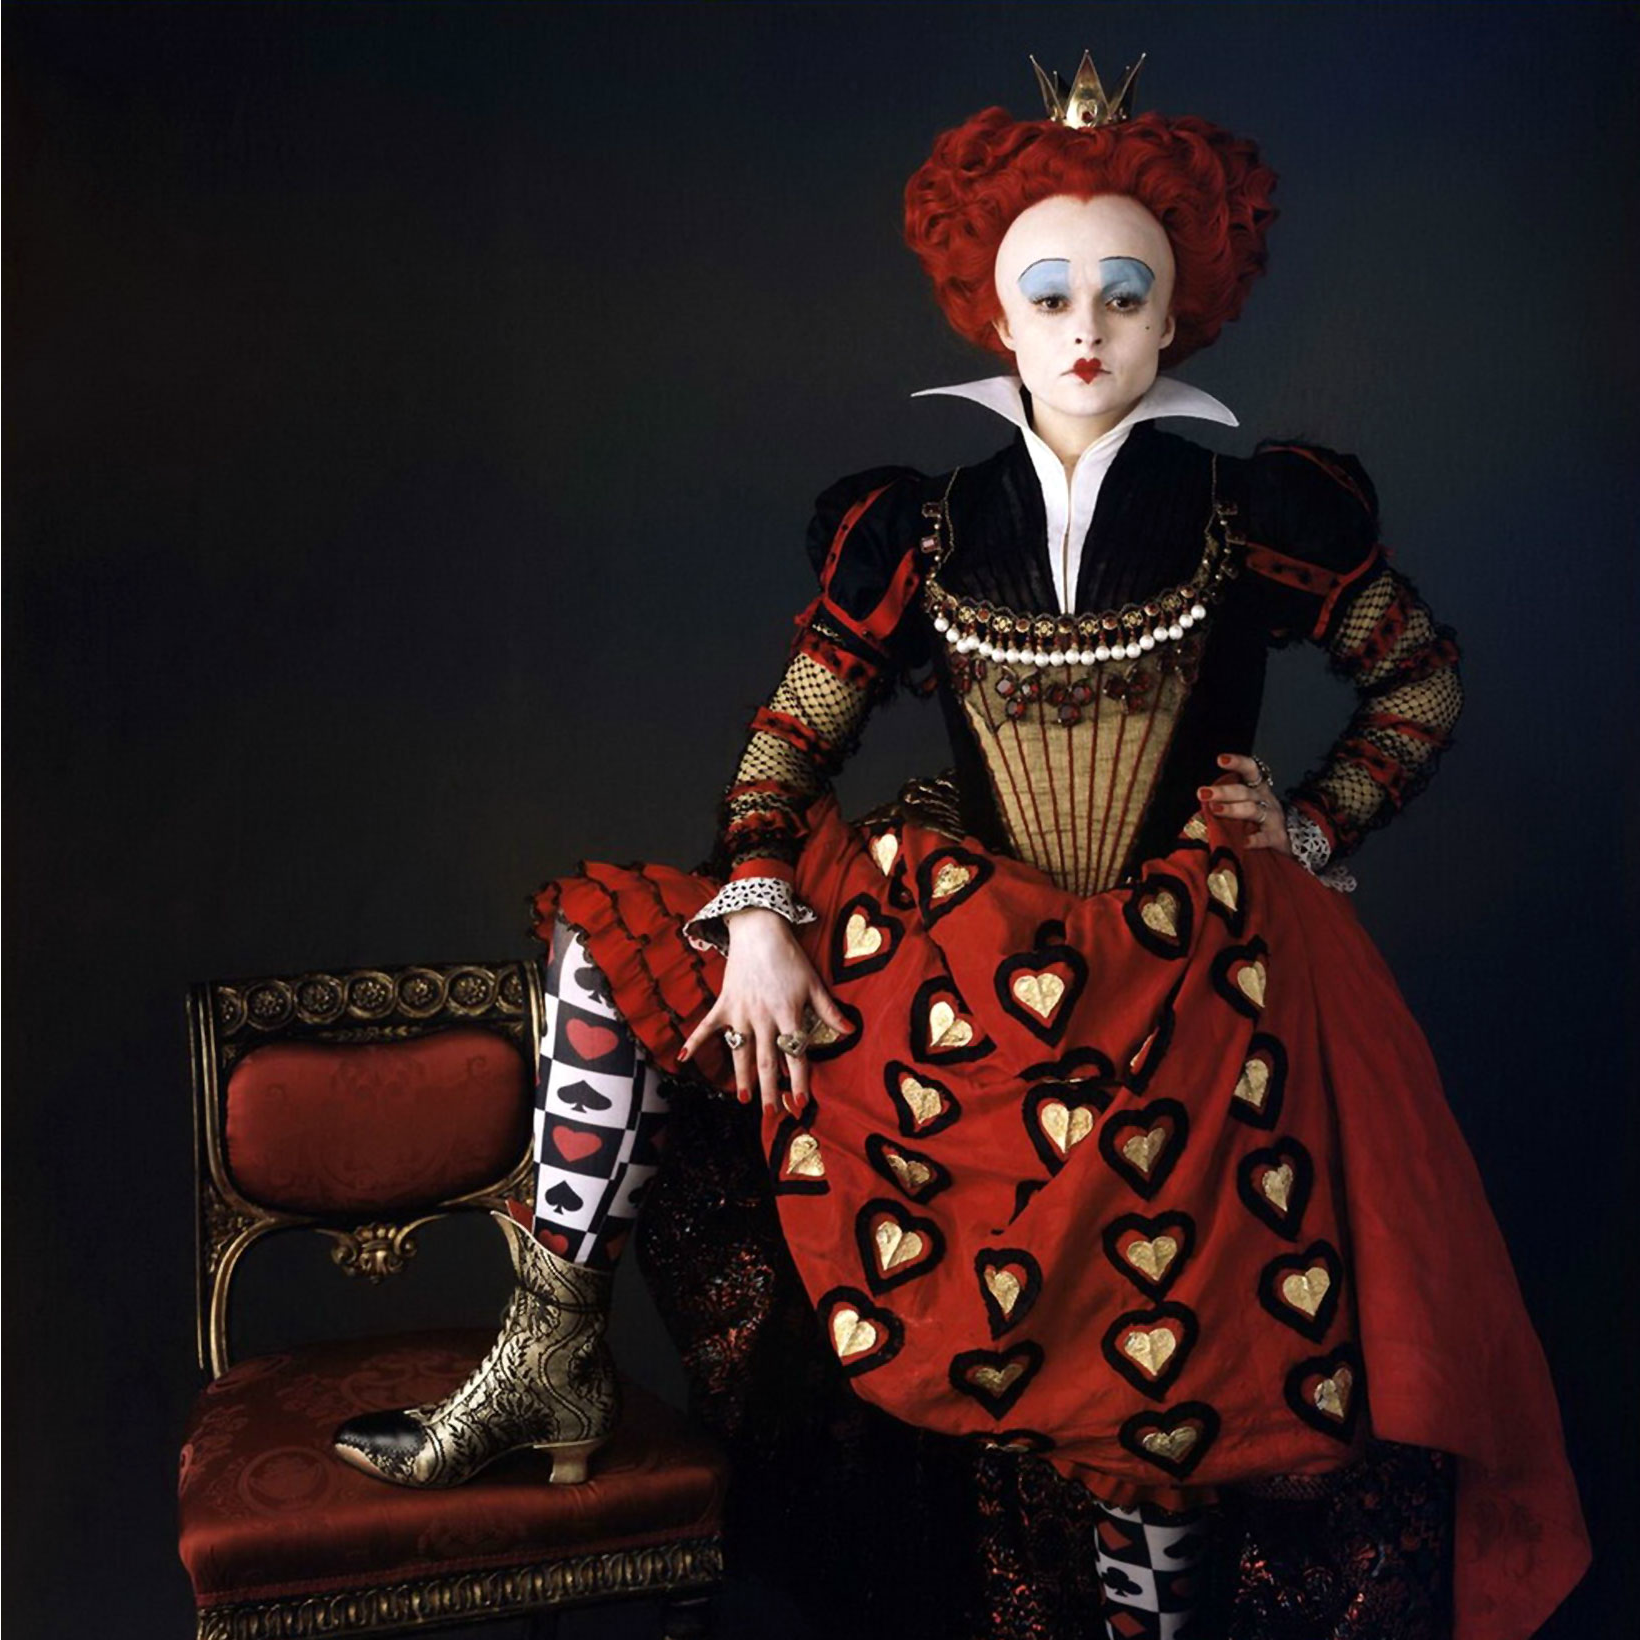 Хелена Бонем Картер в образе Червонной Королевы